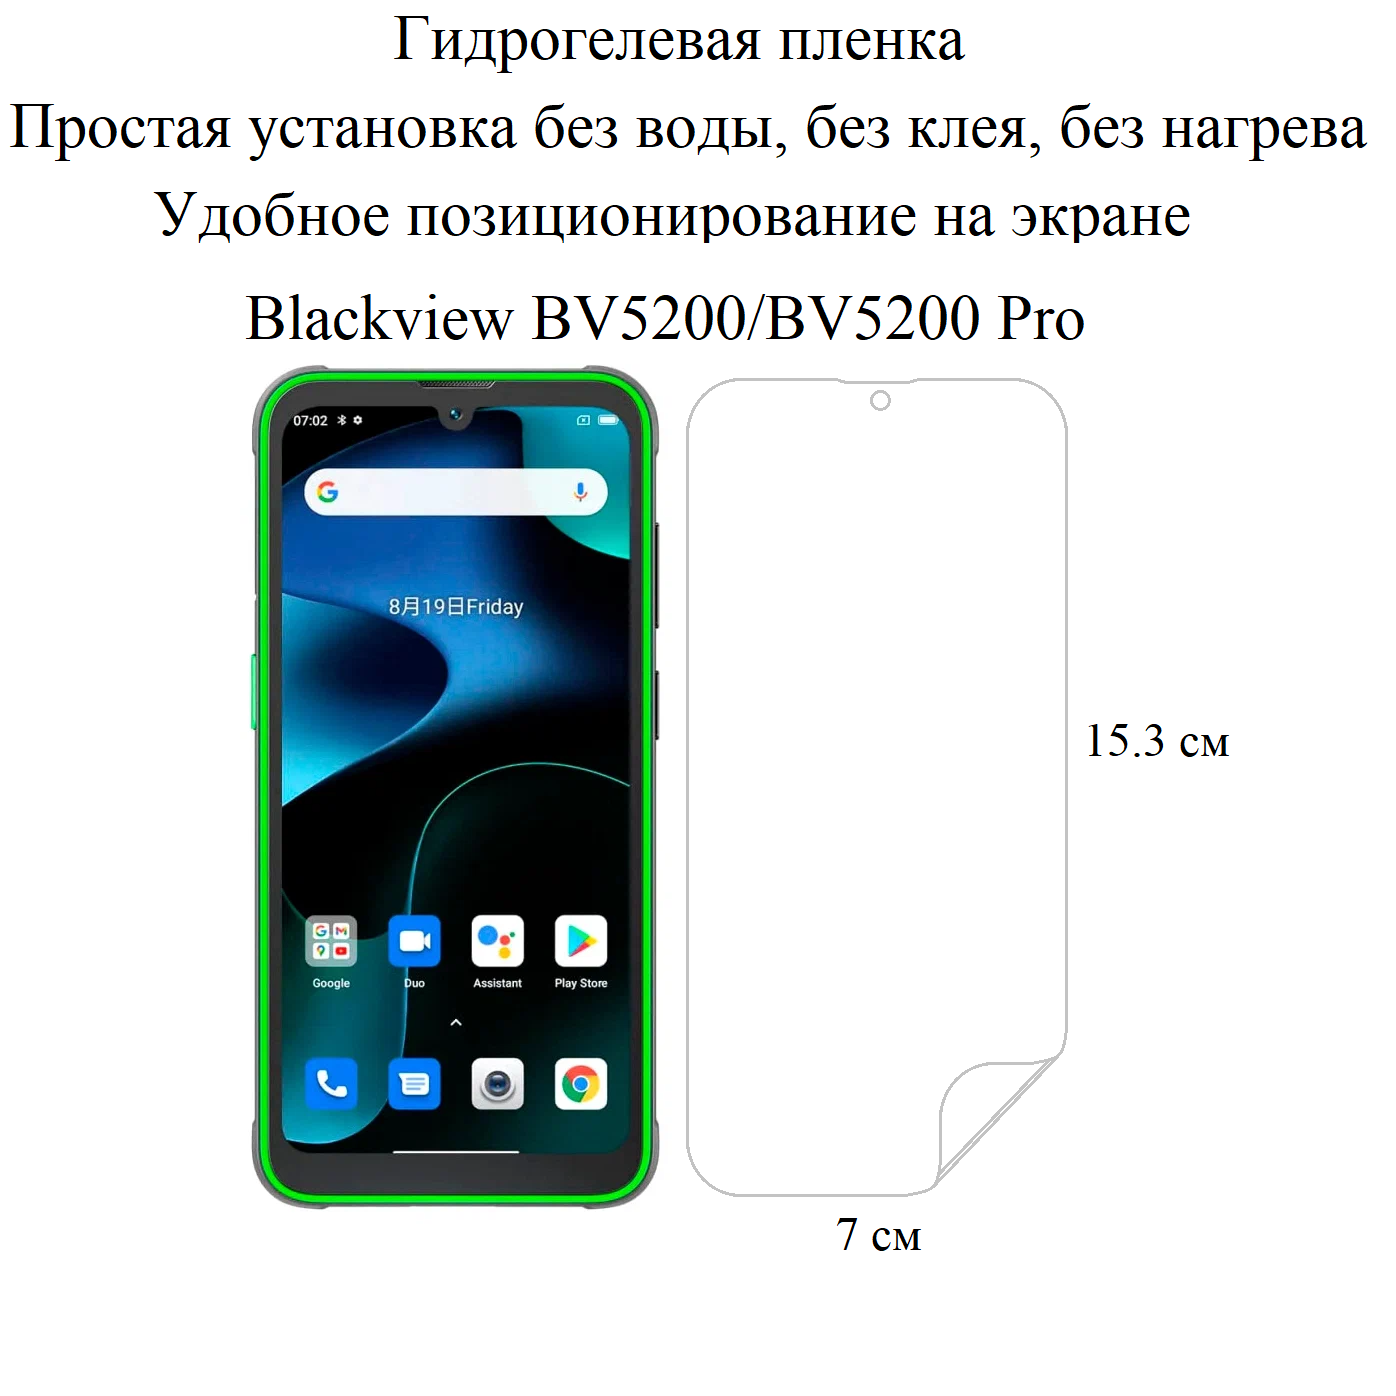 Глянцевая гидрогелевая пленка hoco. на экран смартфона Blackview BV5200/BV5200 Pro